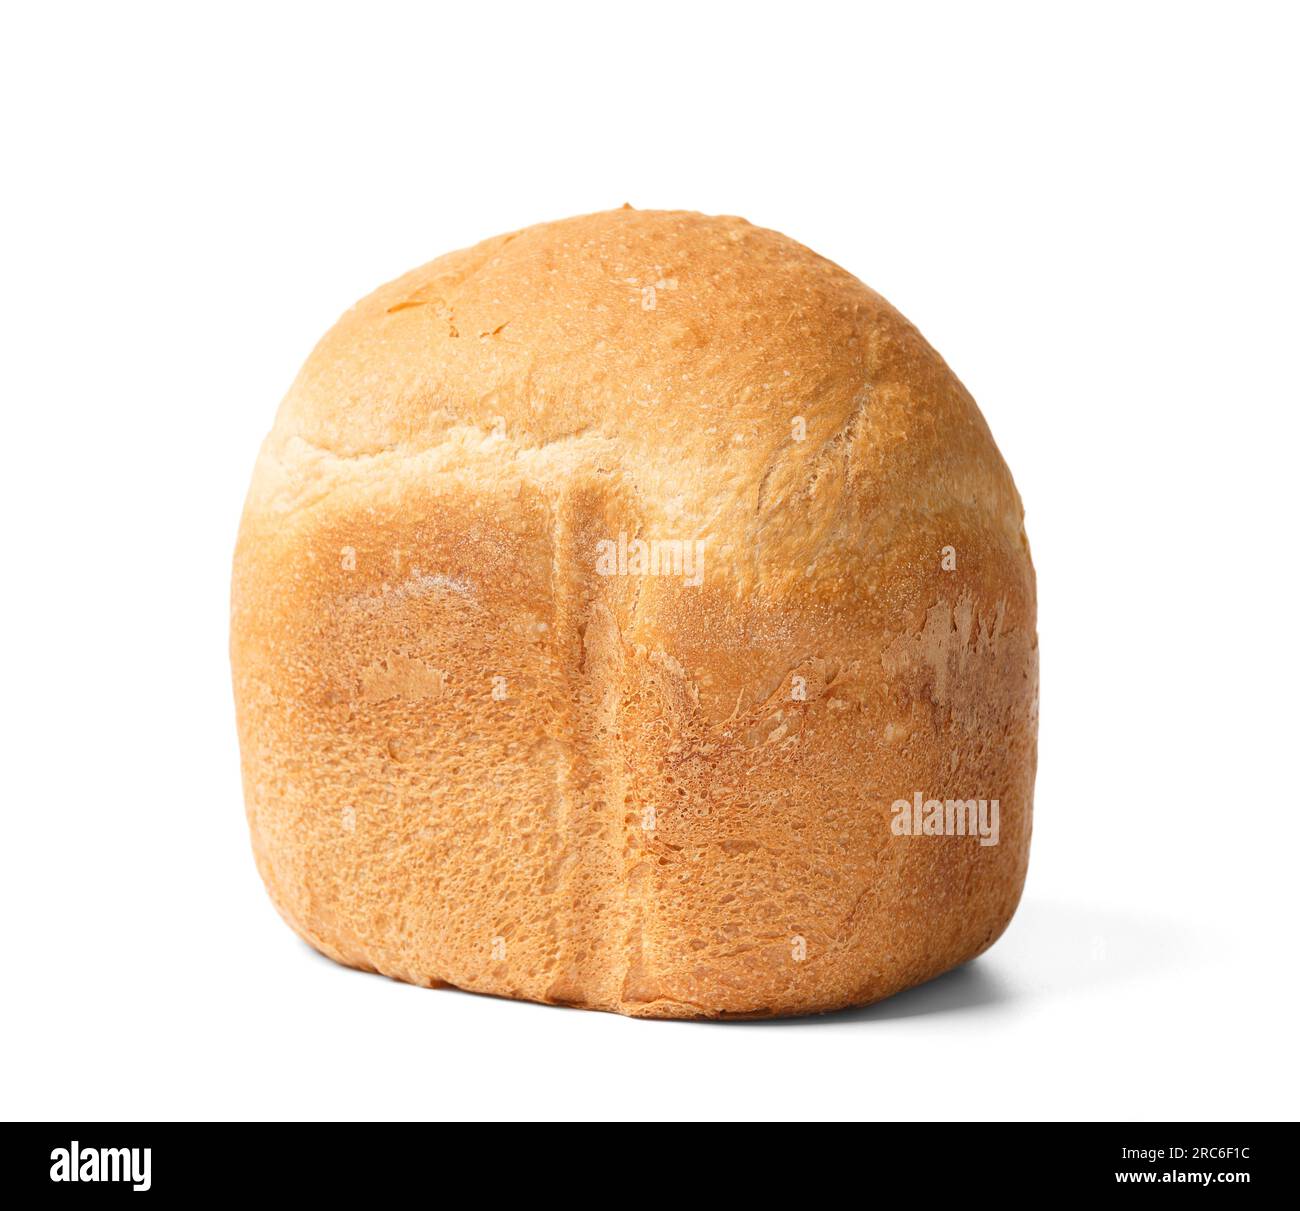 Macchina per il pane immagini e fotografie stock ad alta risoluzione - Alamy